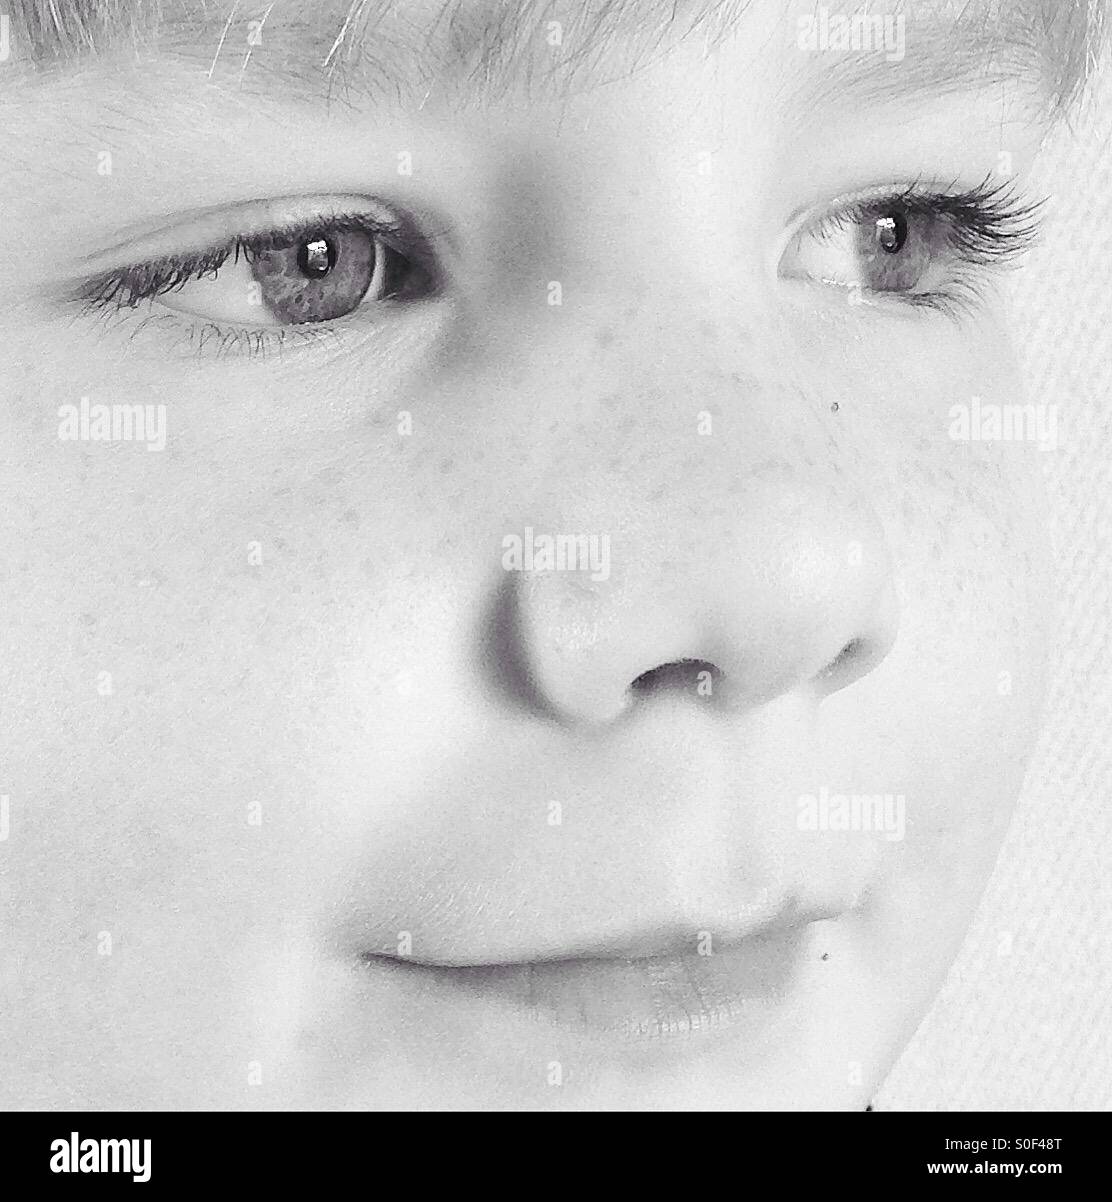 Visage d'un garçon de 6 ans. Image en noir et blanc. Banque D'Images